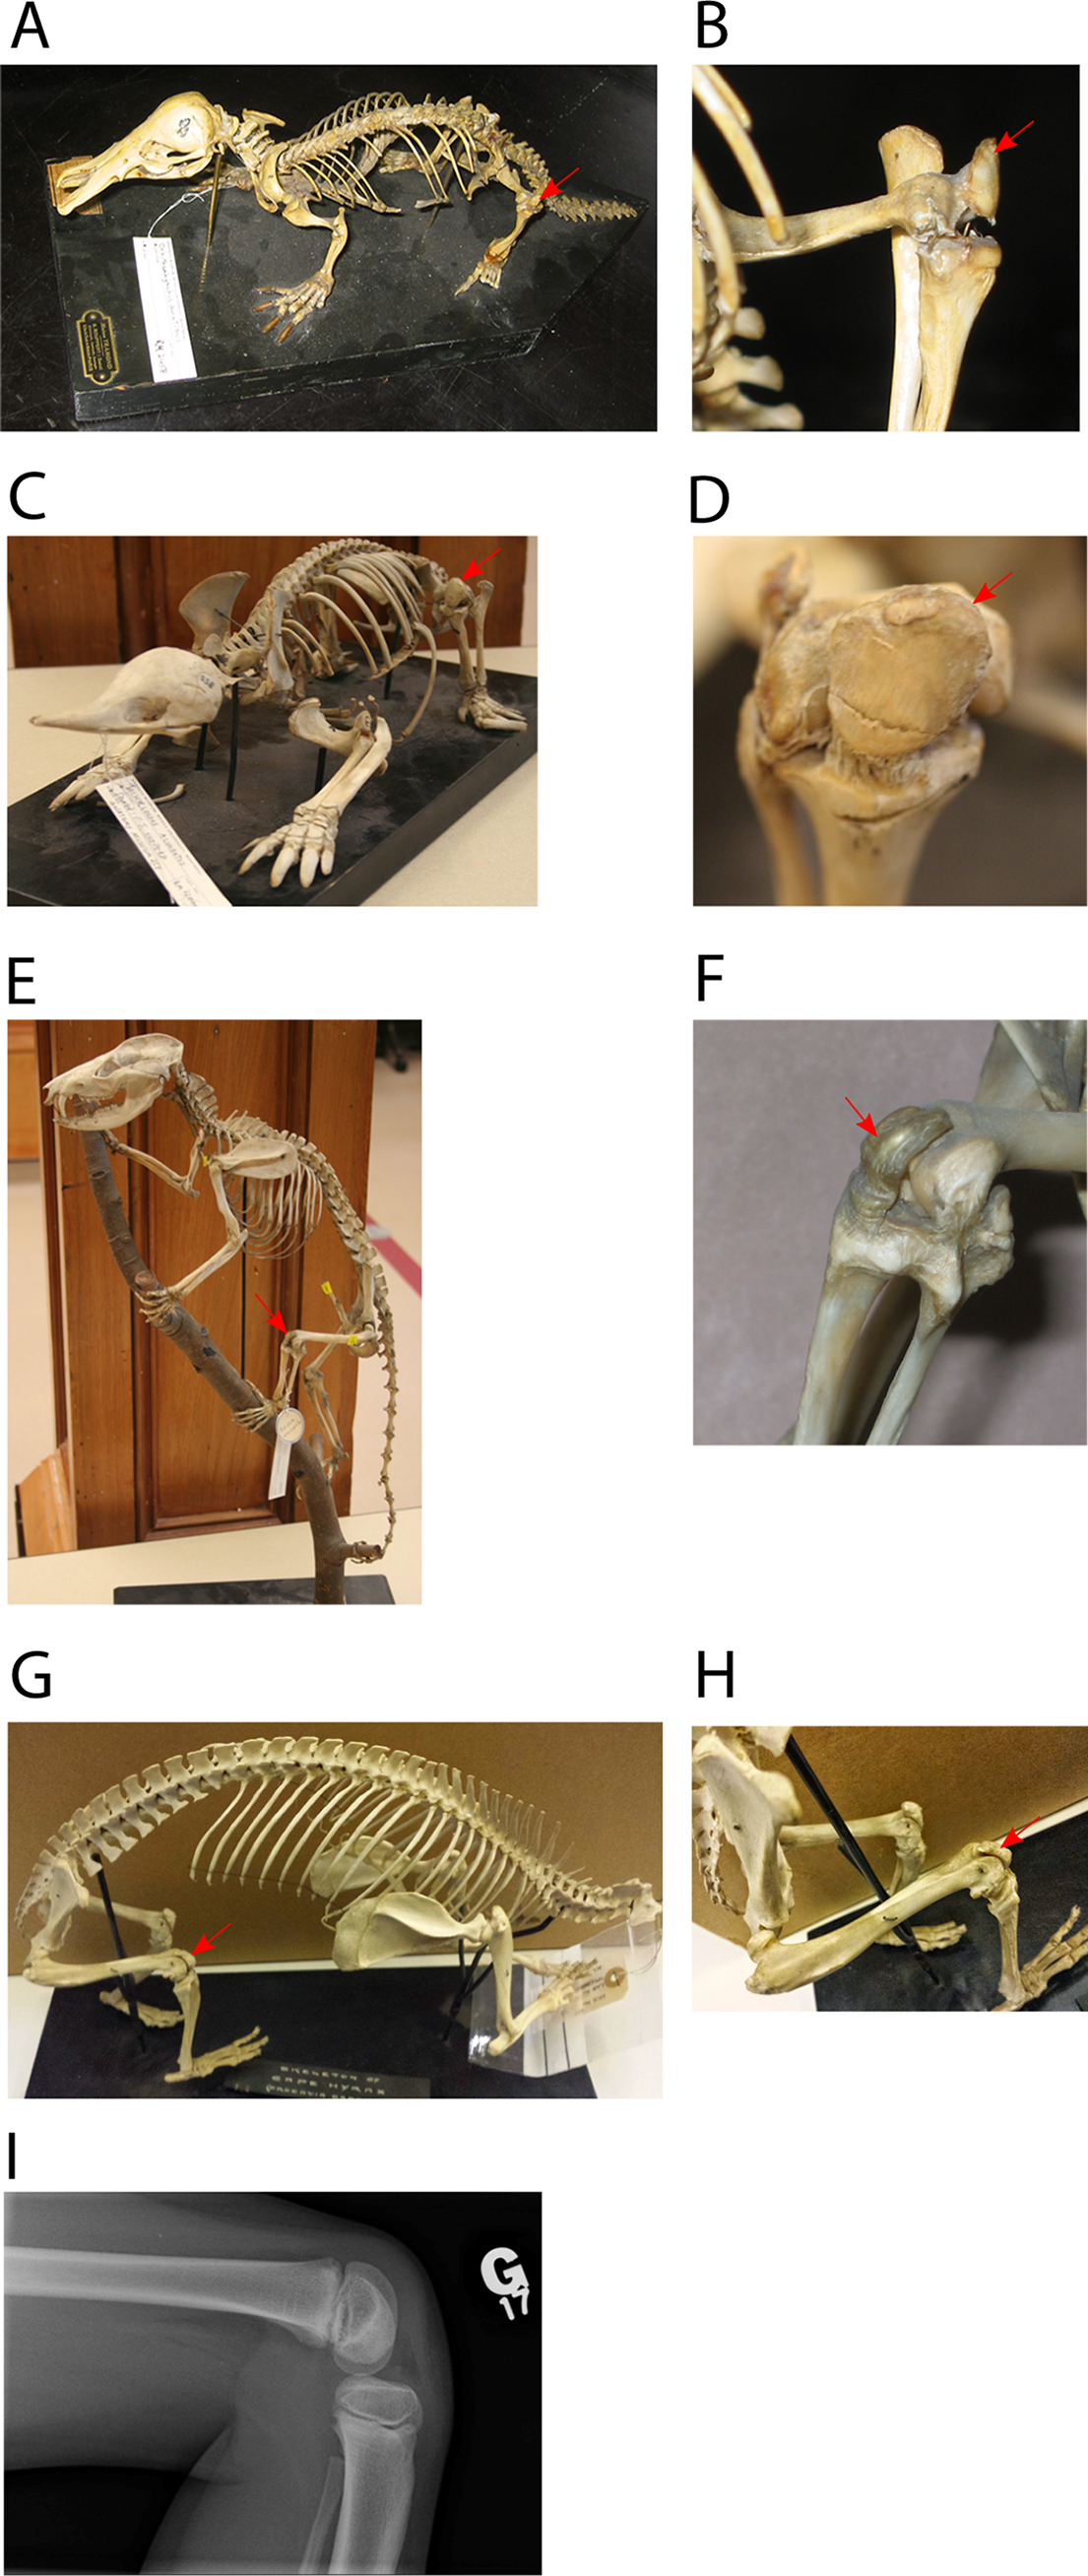 Evolution of the patellar sesamoid bone in mammals [PeerJ]